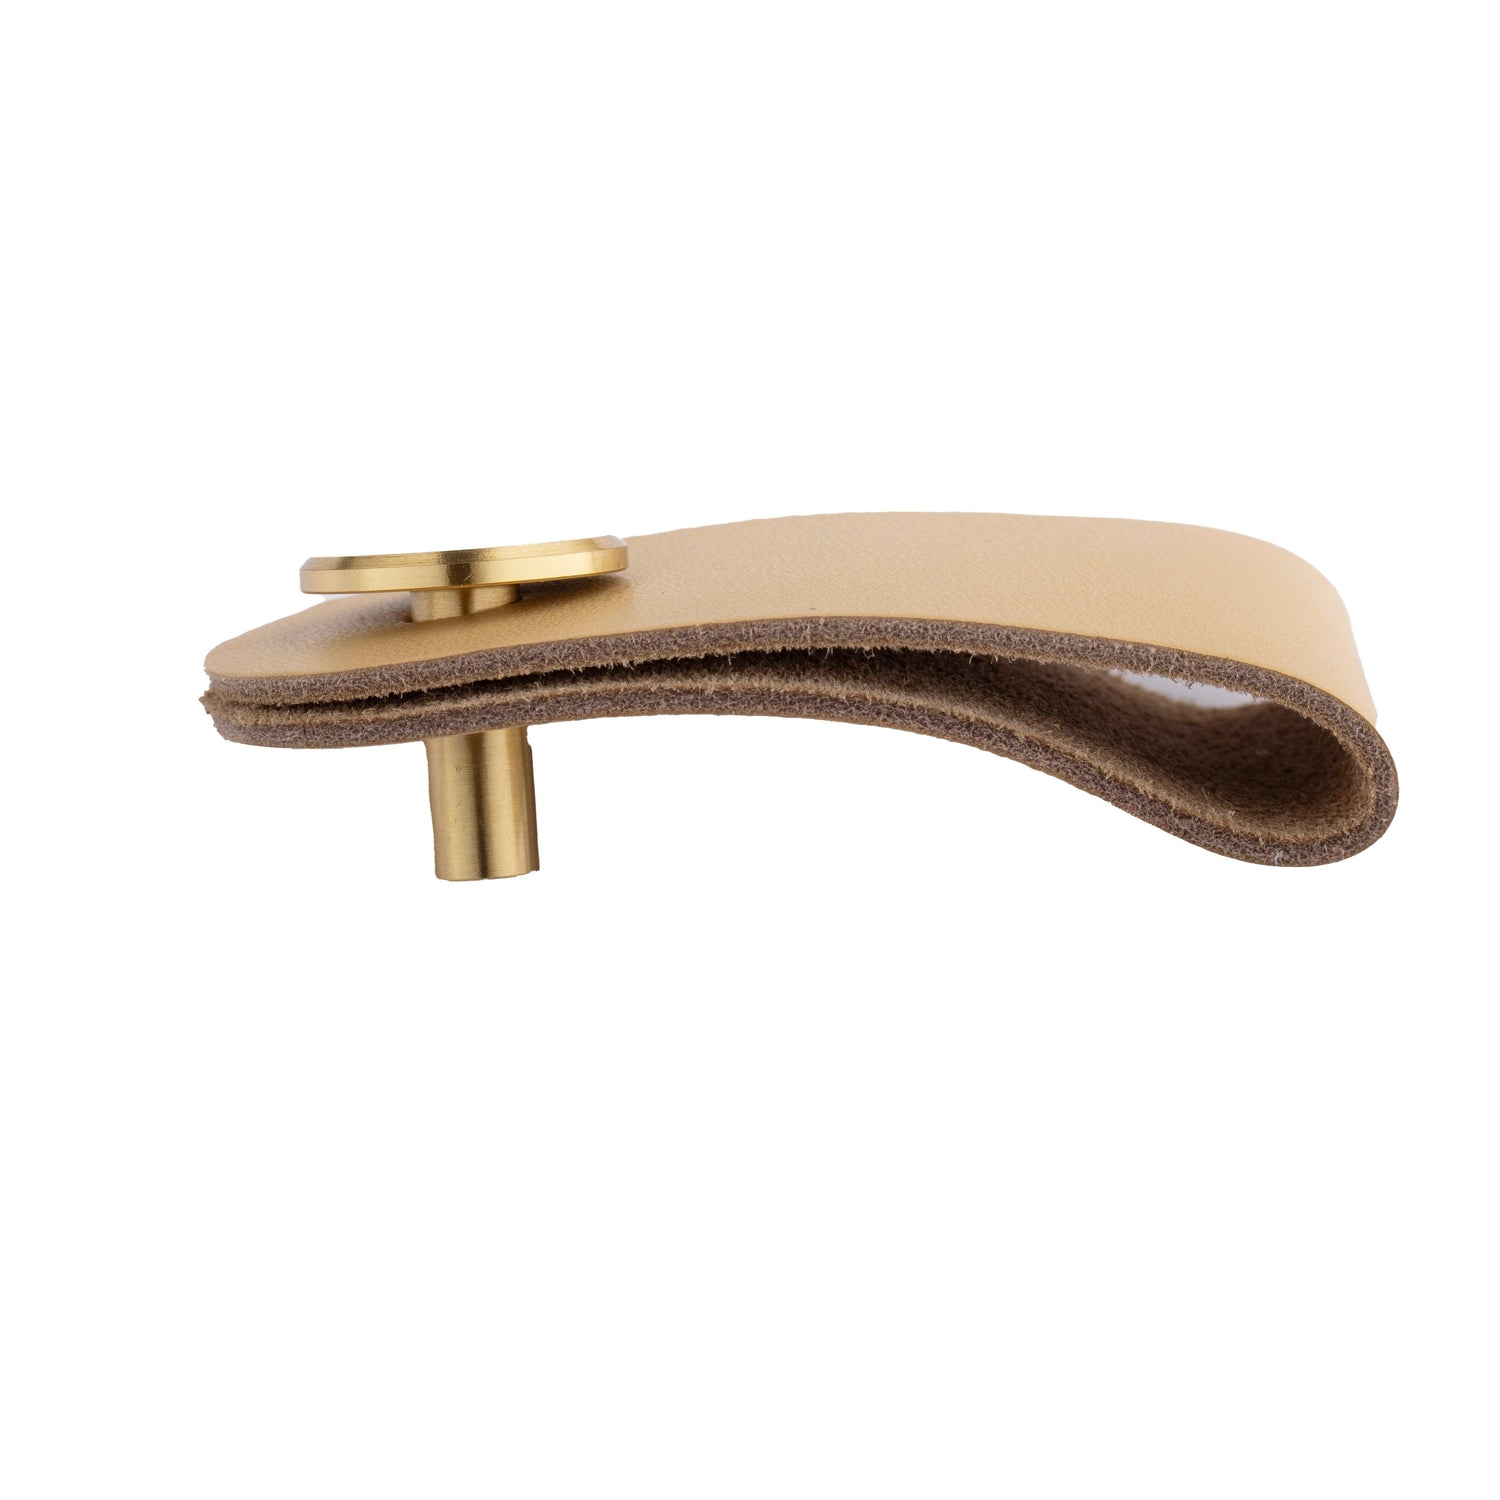 Maverick Pull Knob Knob 65mm / Beige / Leather - M A N T A R A